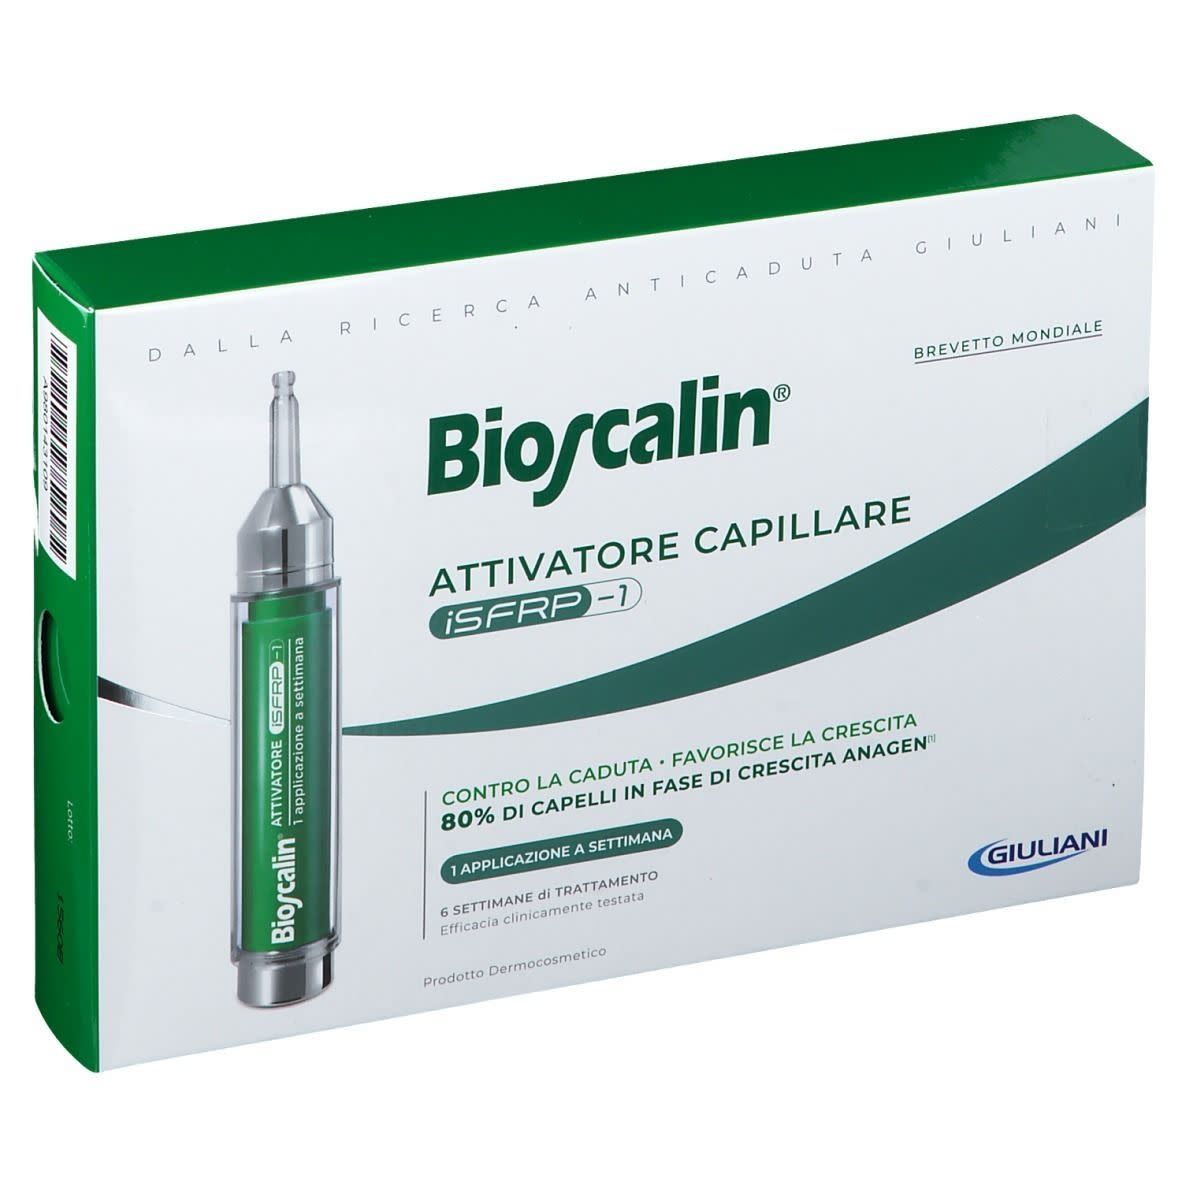 980143109 - Bioscalin Attivatore Capillare iSFRP-1 Capelli deboli 1 fiala 10ml - 4704050_3.jpg